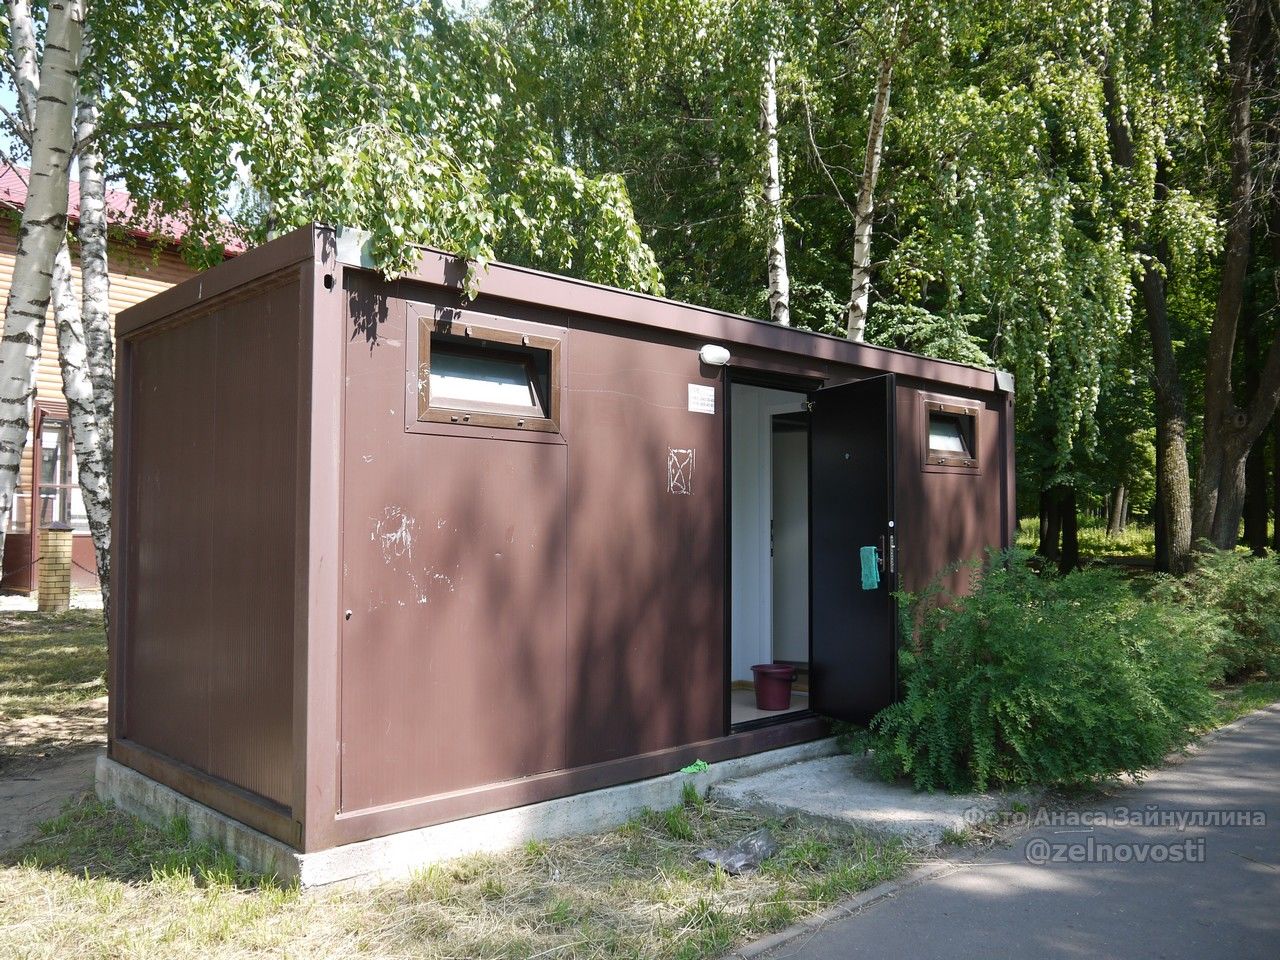 Для посетителей городского парка Зеленодольска заработал общественный туалет